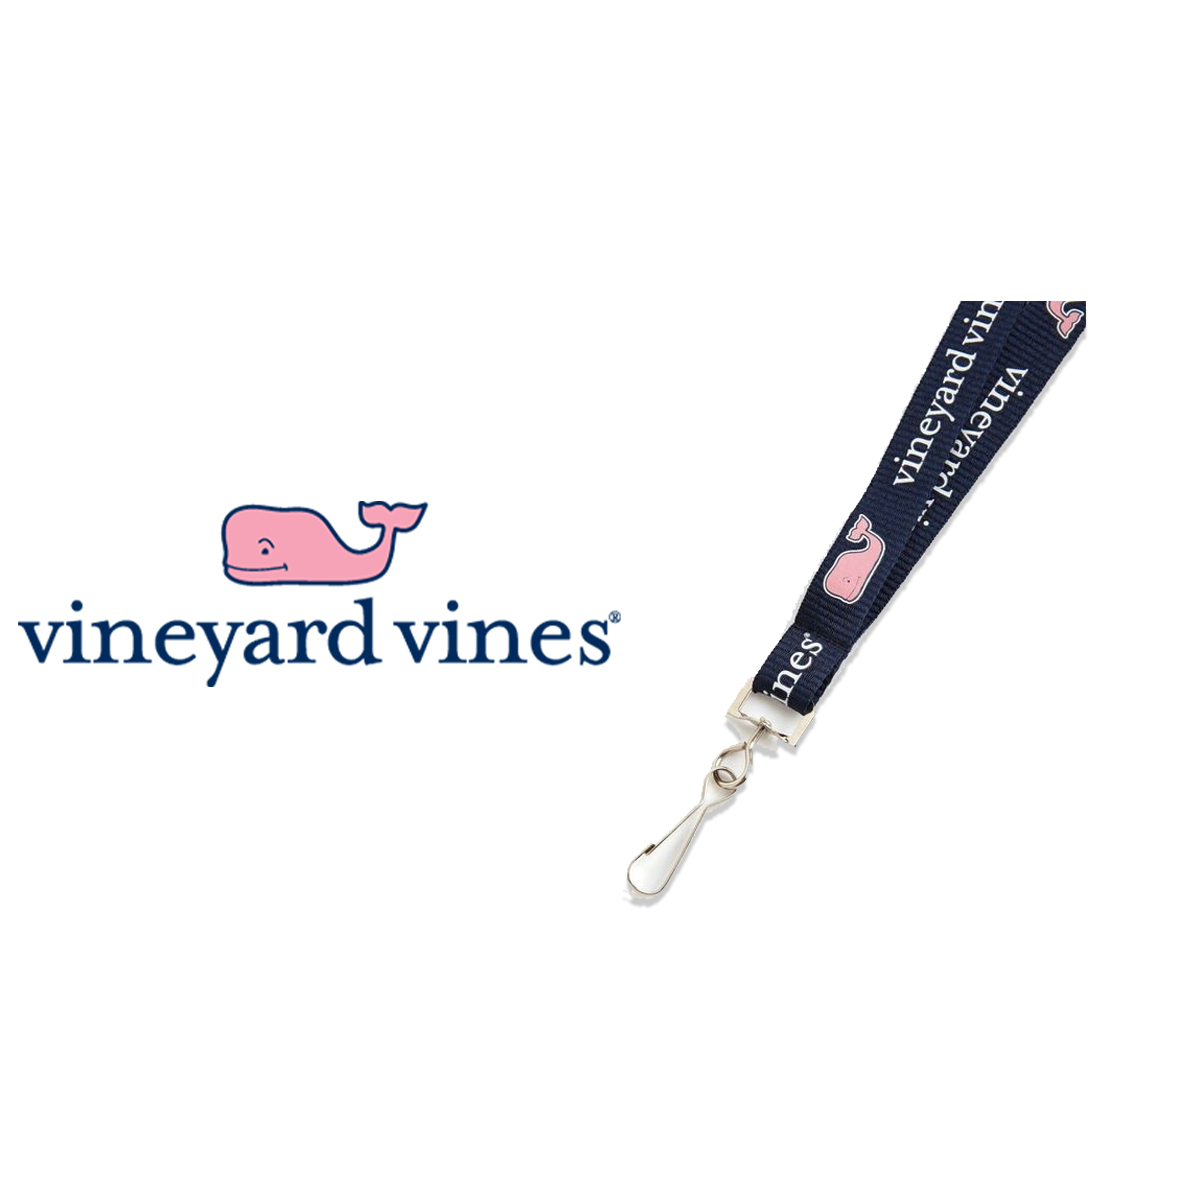 Free Lanyard at vineyard vines